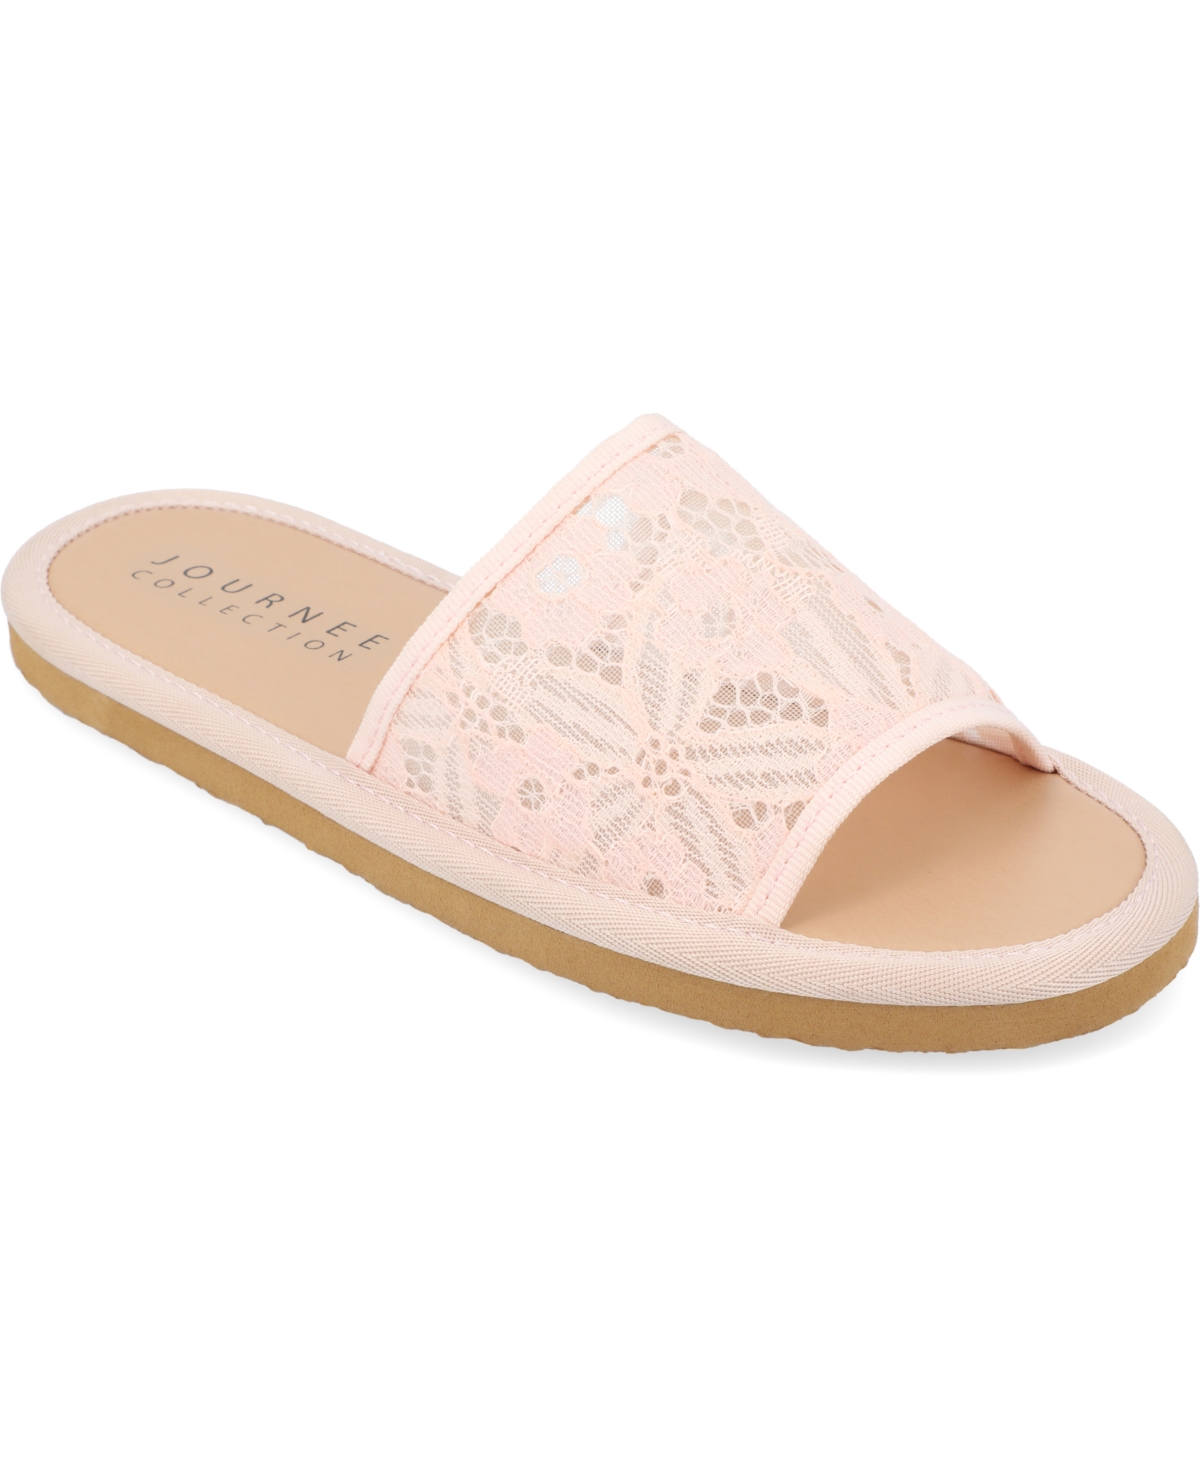 Women's Eniola Lace Flat Slide Sandals - Pink